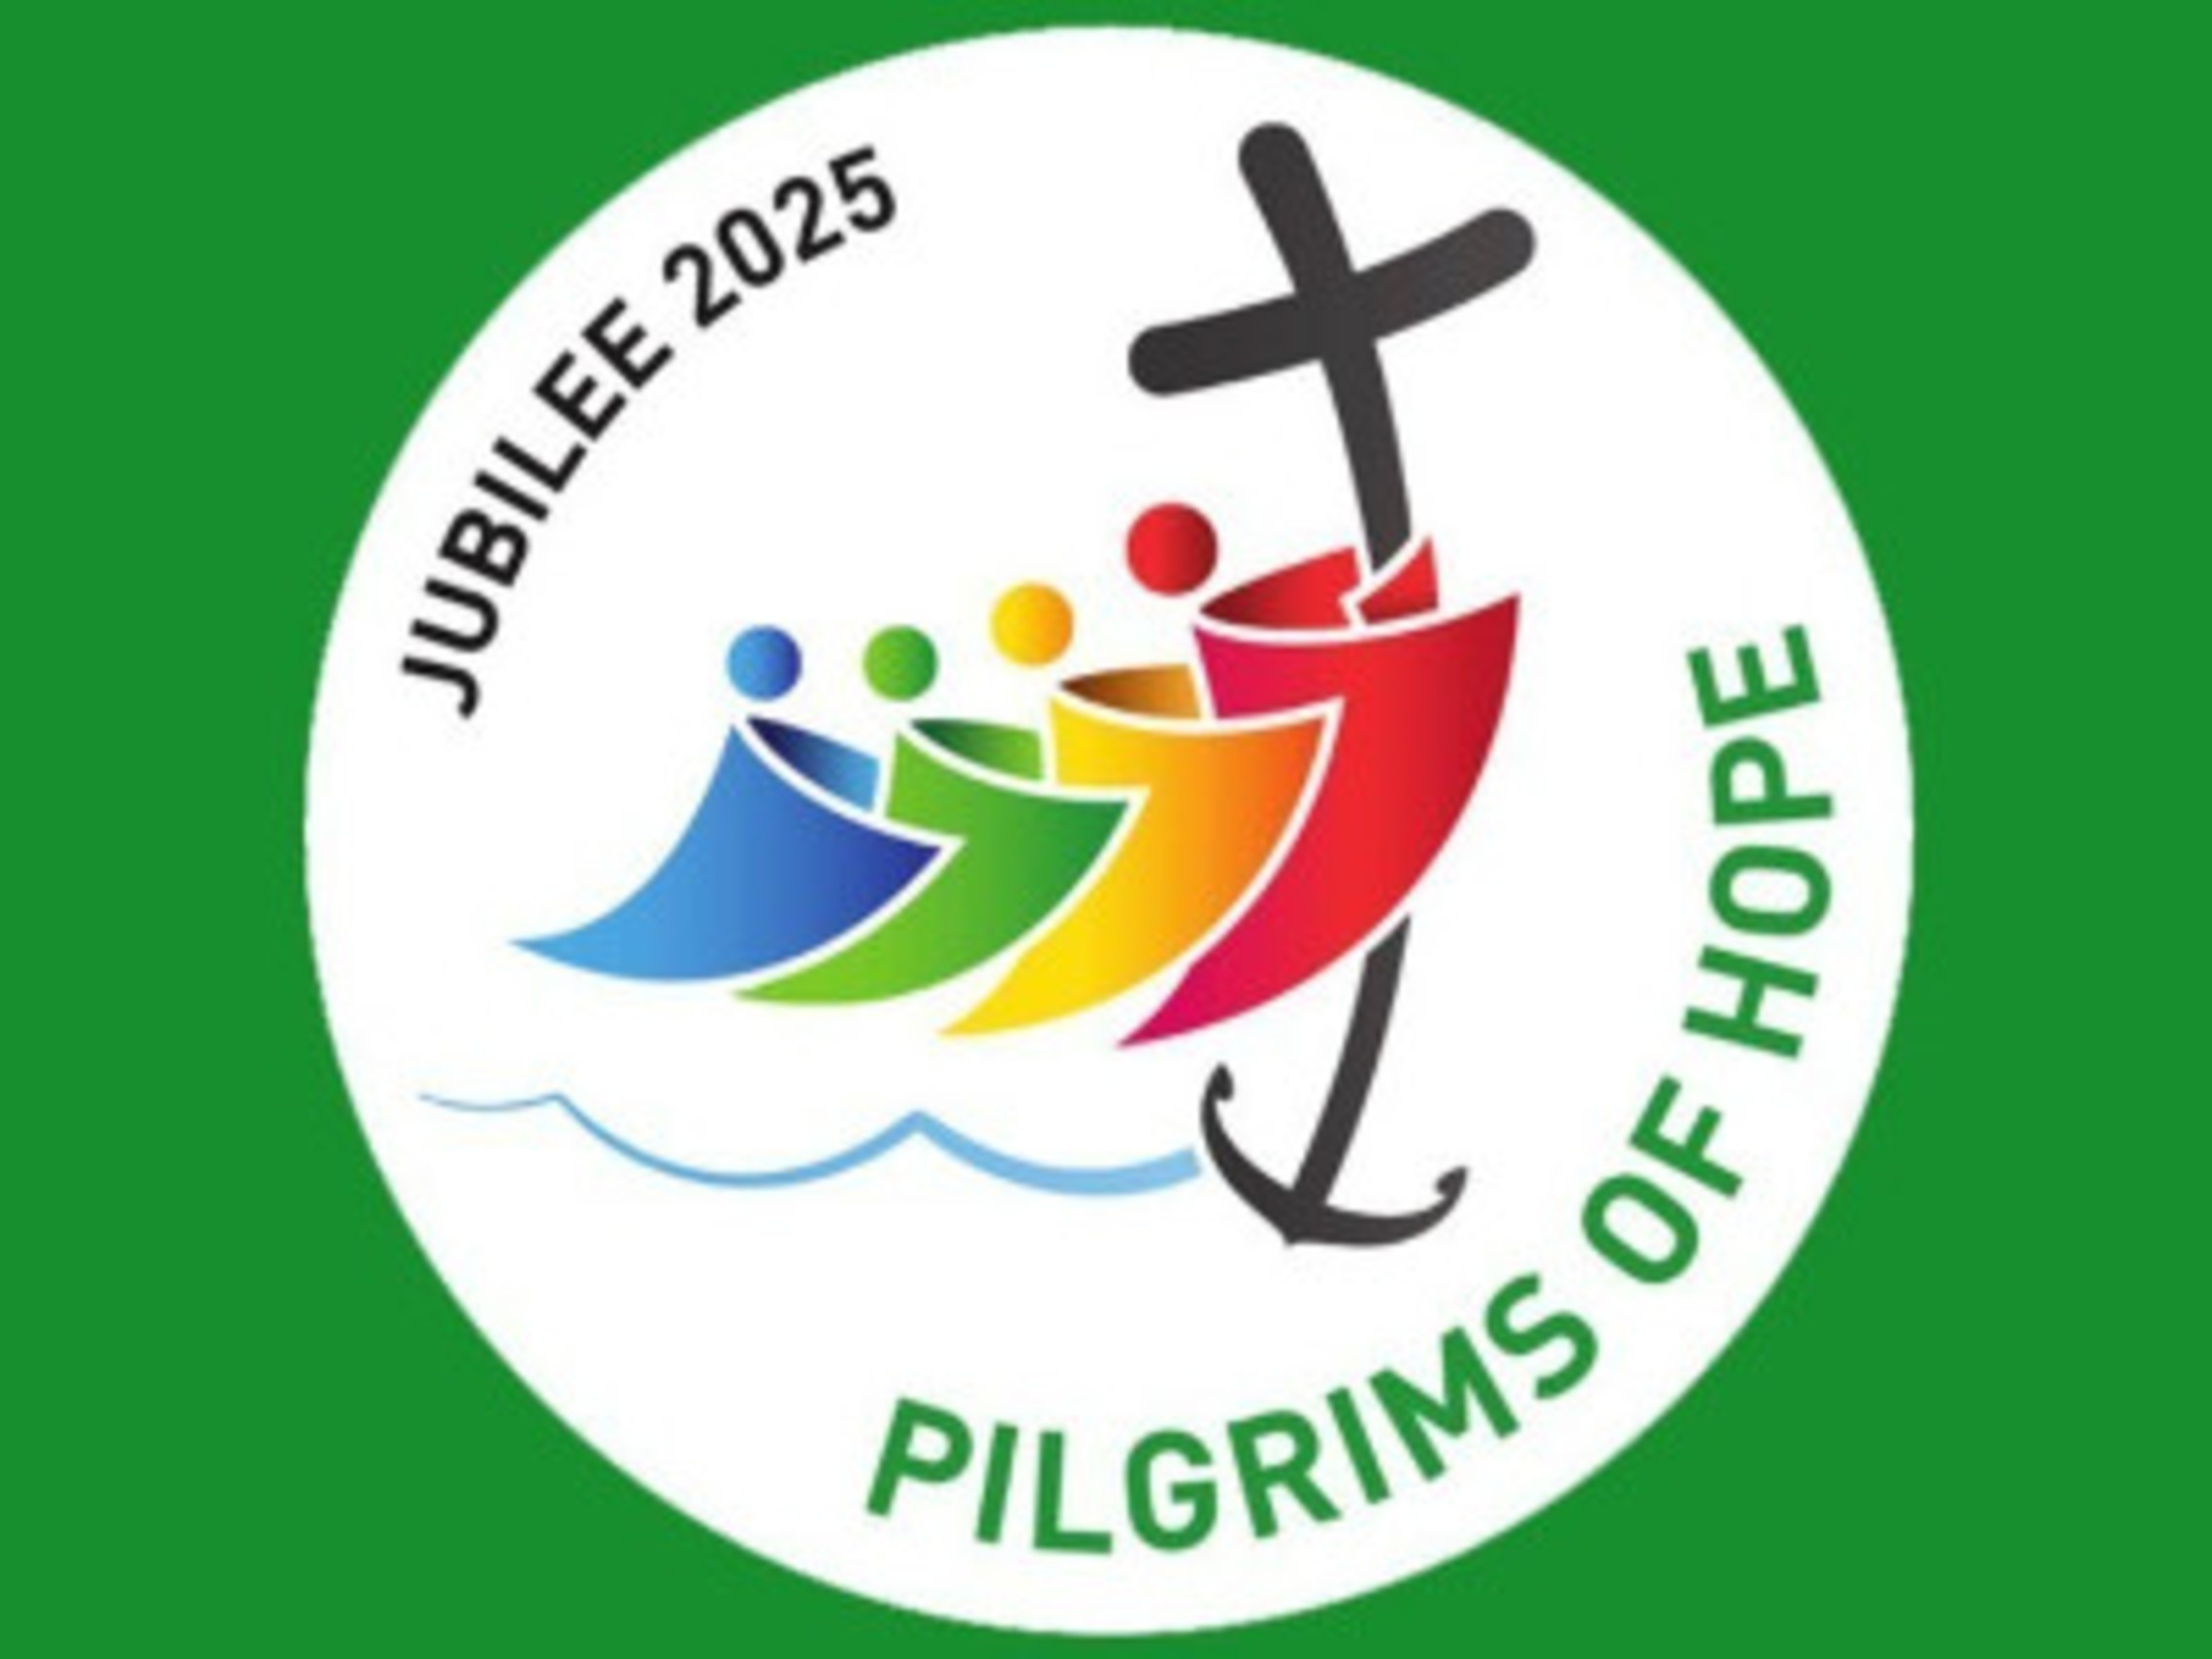 Jubilee2025 Logo 400300